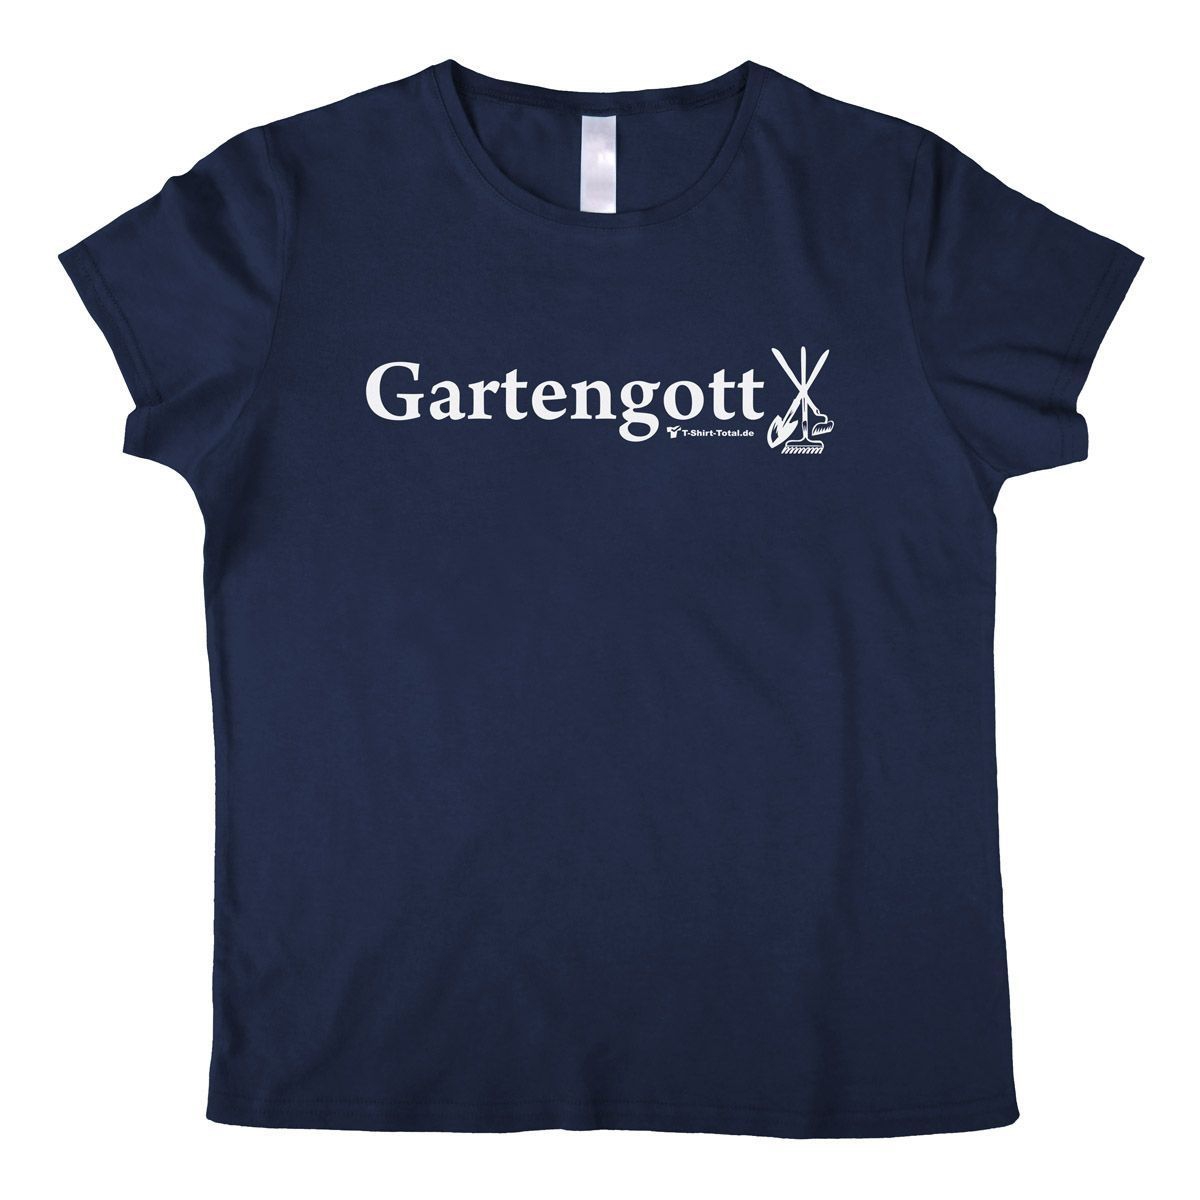 Gartengott Woman T-Shirt navy Medium